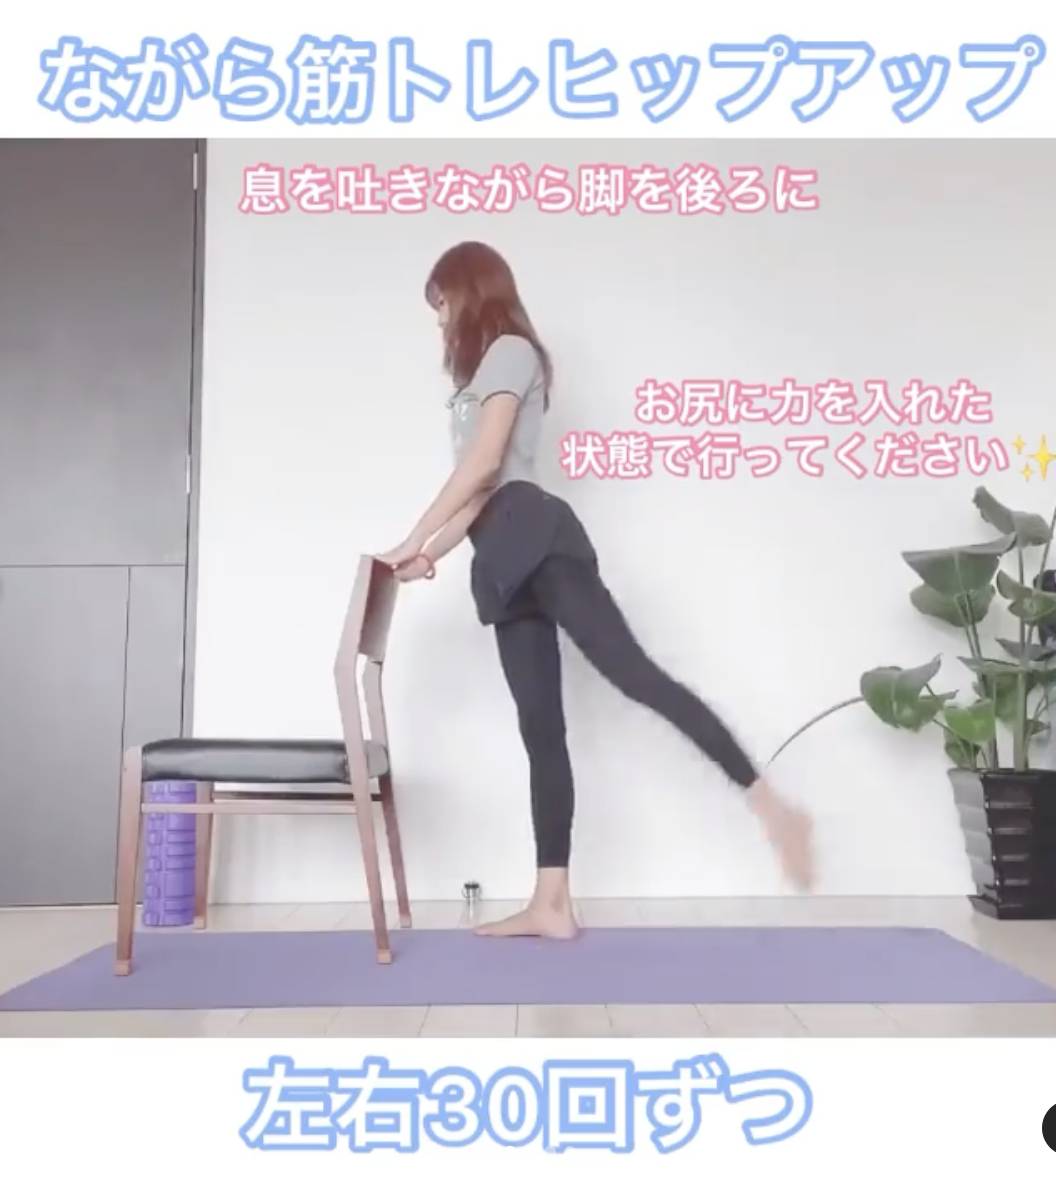 居家運動輕鬆減重8kg！日本女生從50kg減至42kg秘訣公開